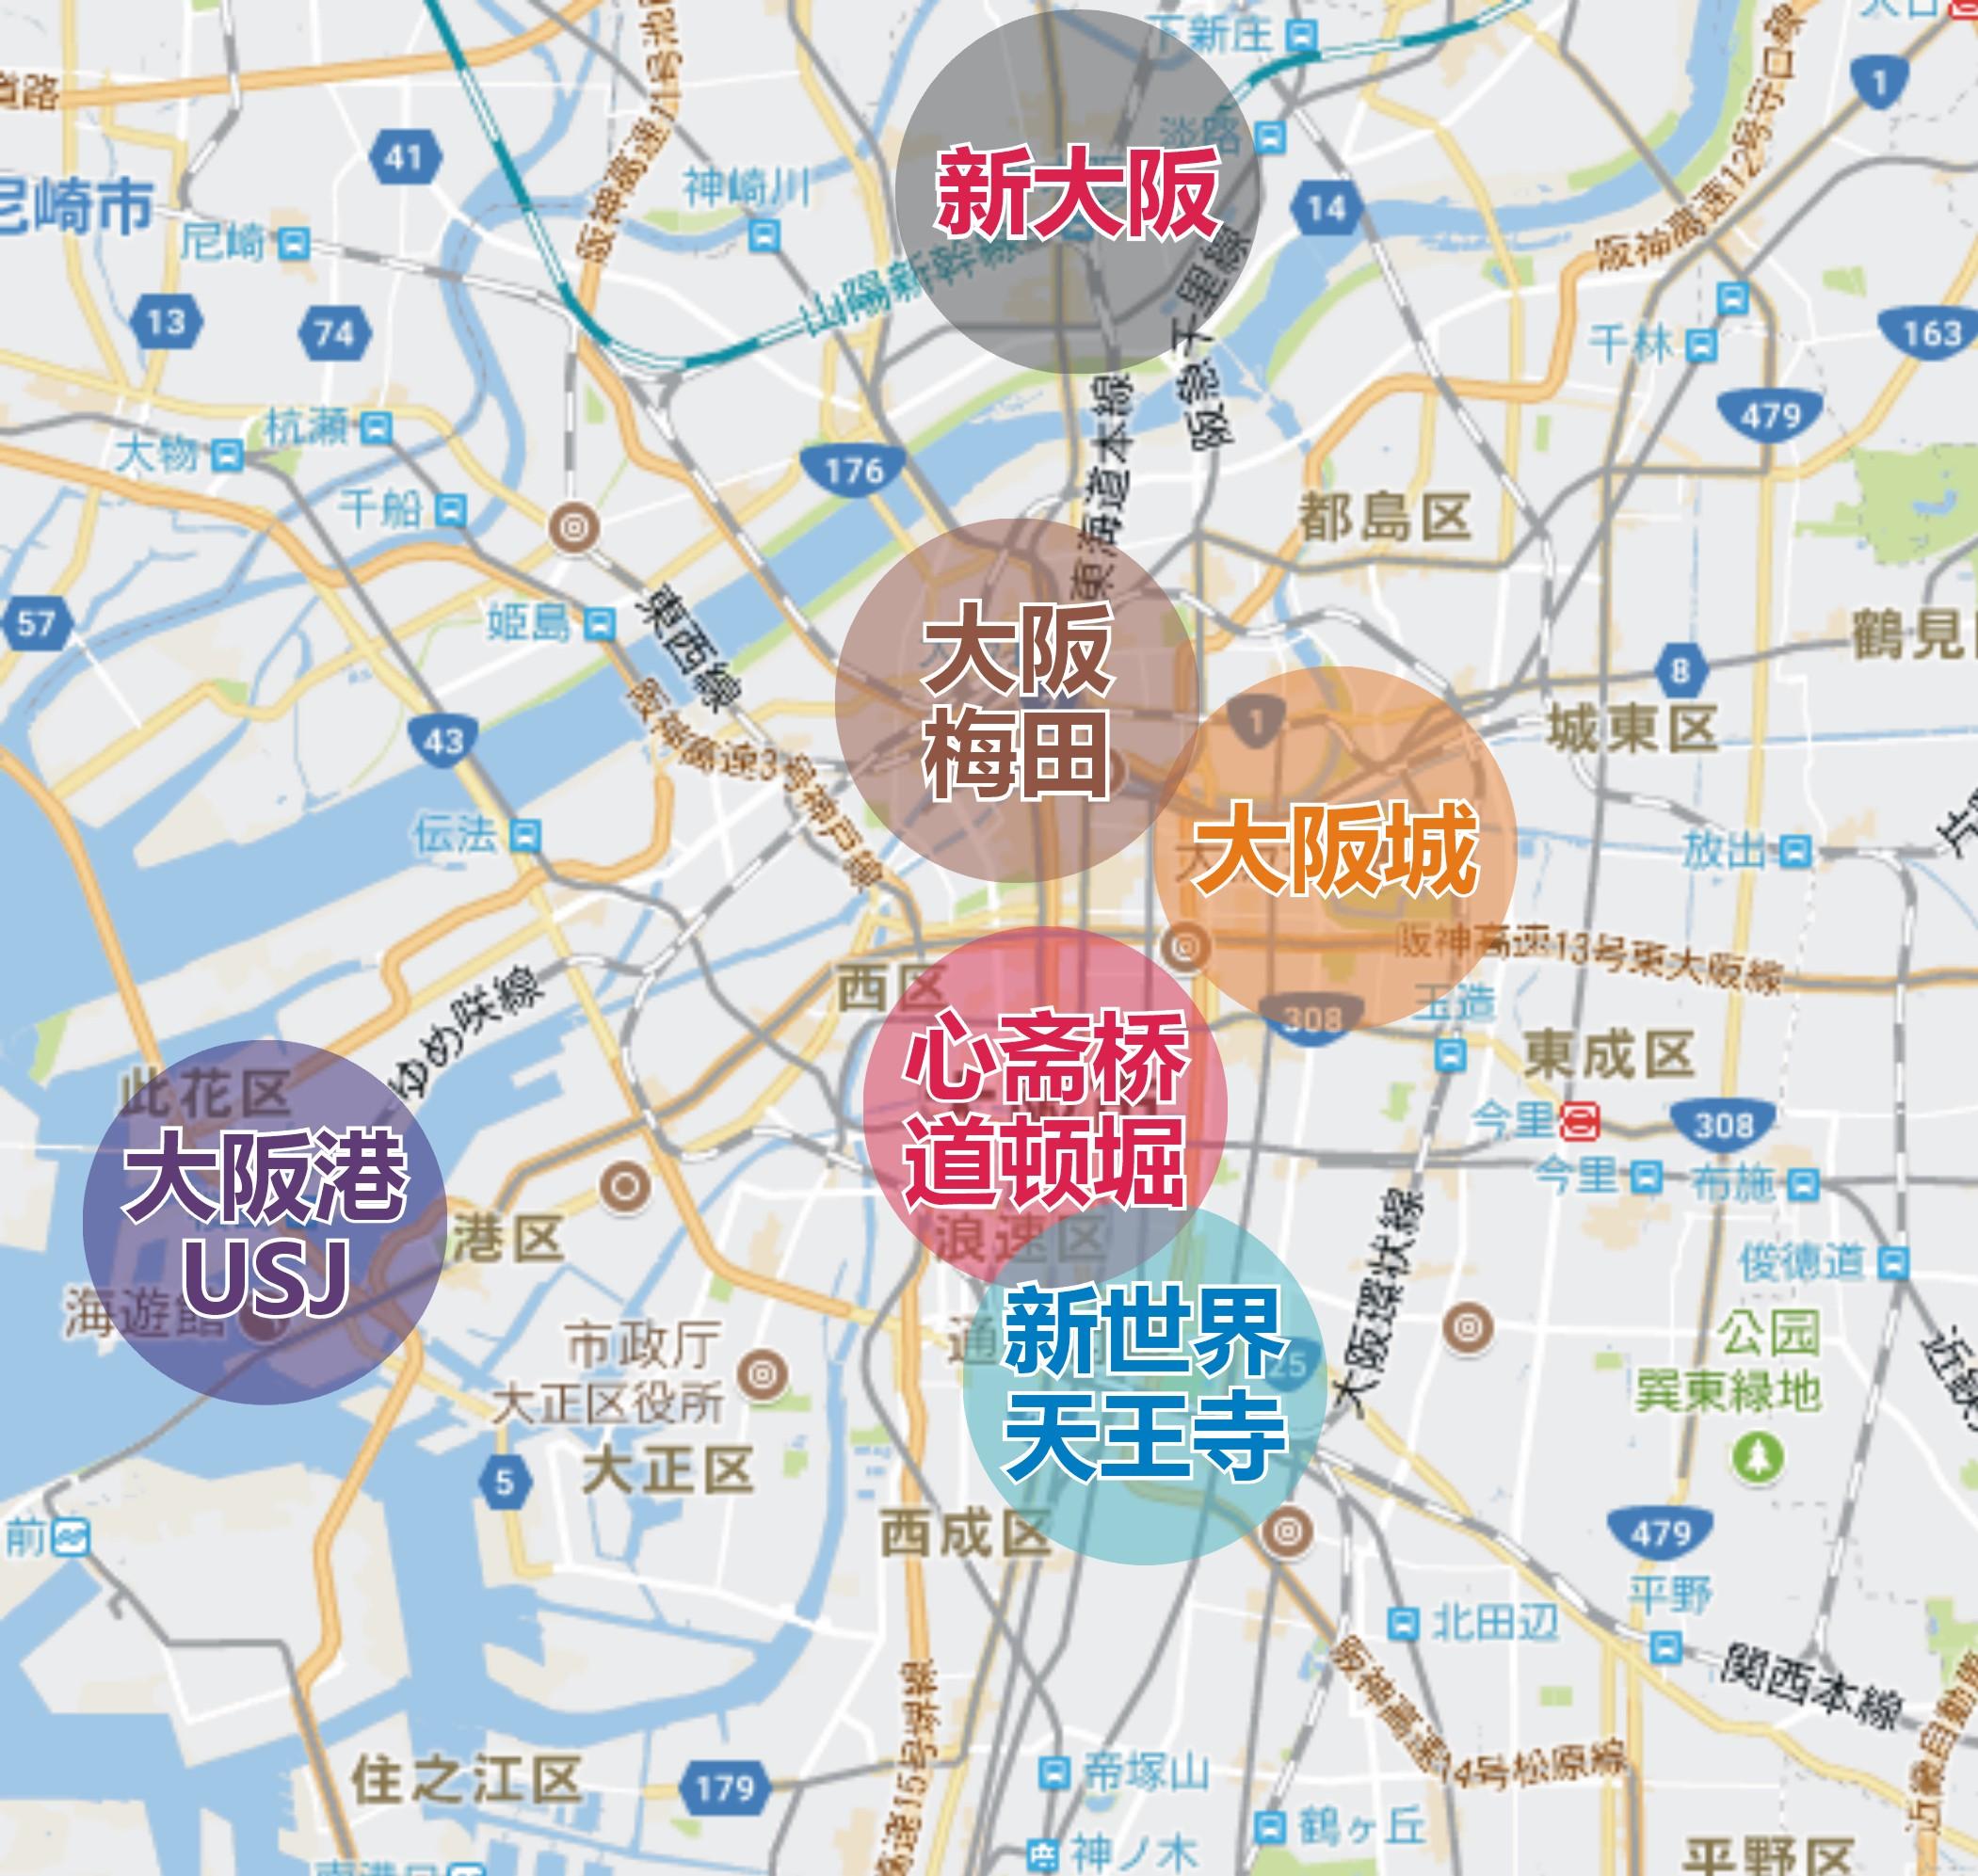 所以,大阪和东京,既是两大落脚点,也是两大中转站,更是东日本和西日本